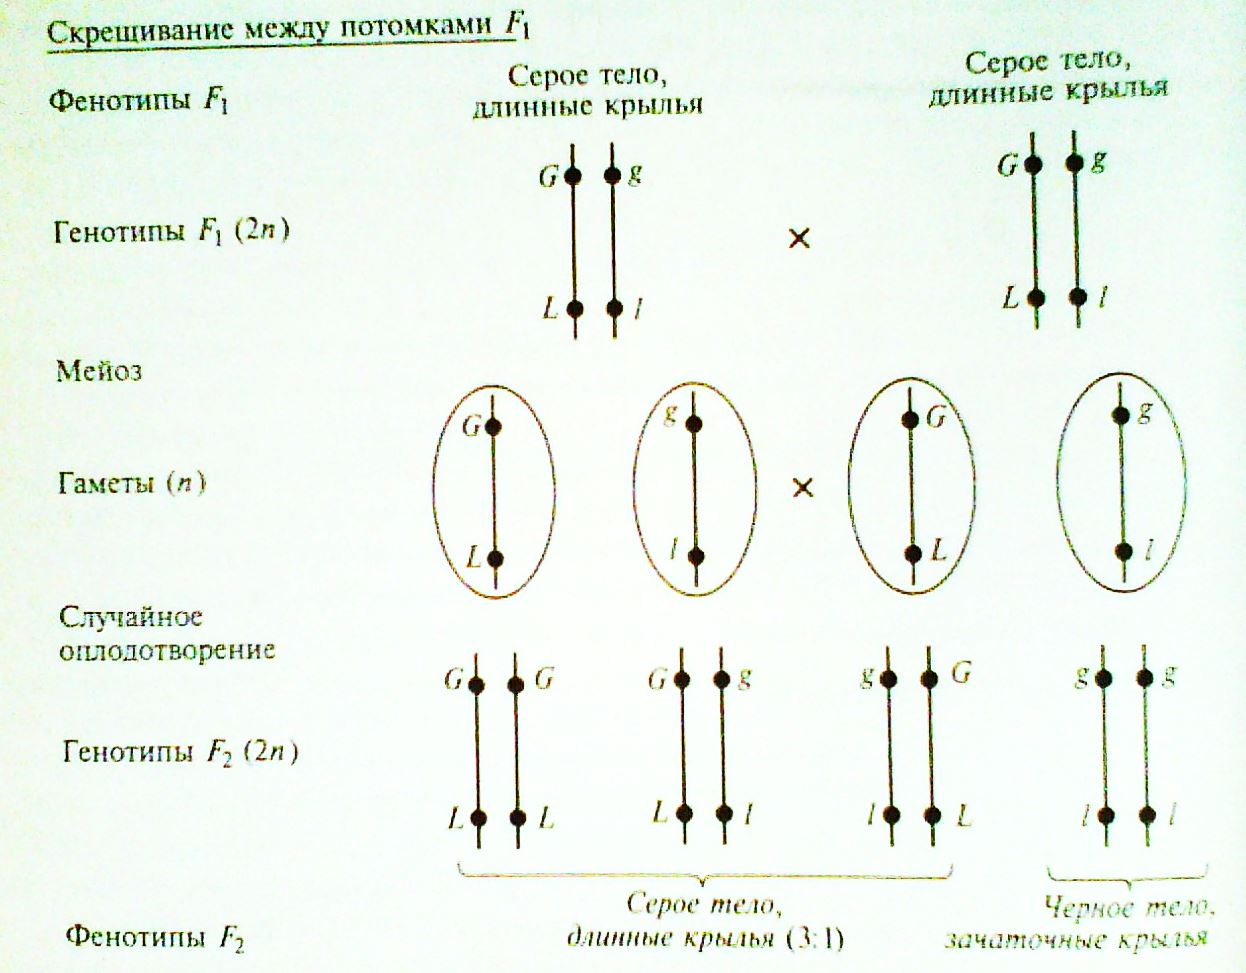 Каждый ген занимает в хромосоме определенное место